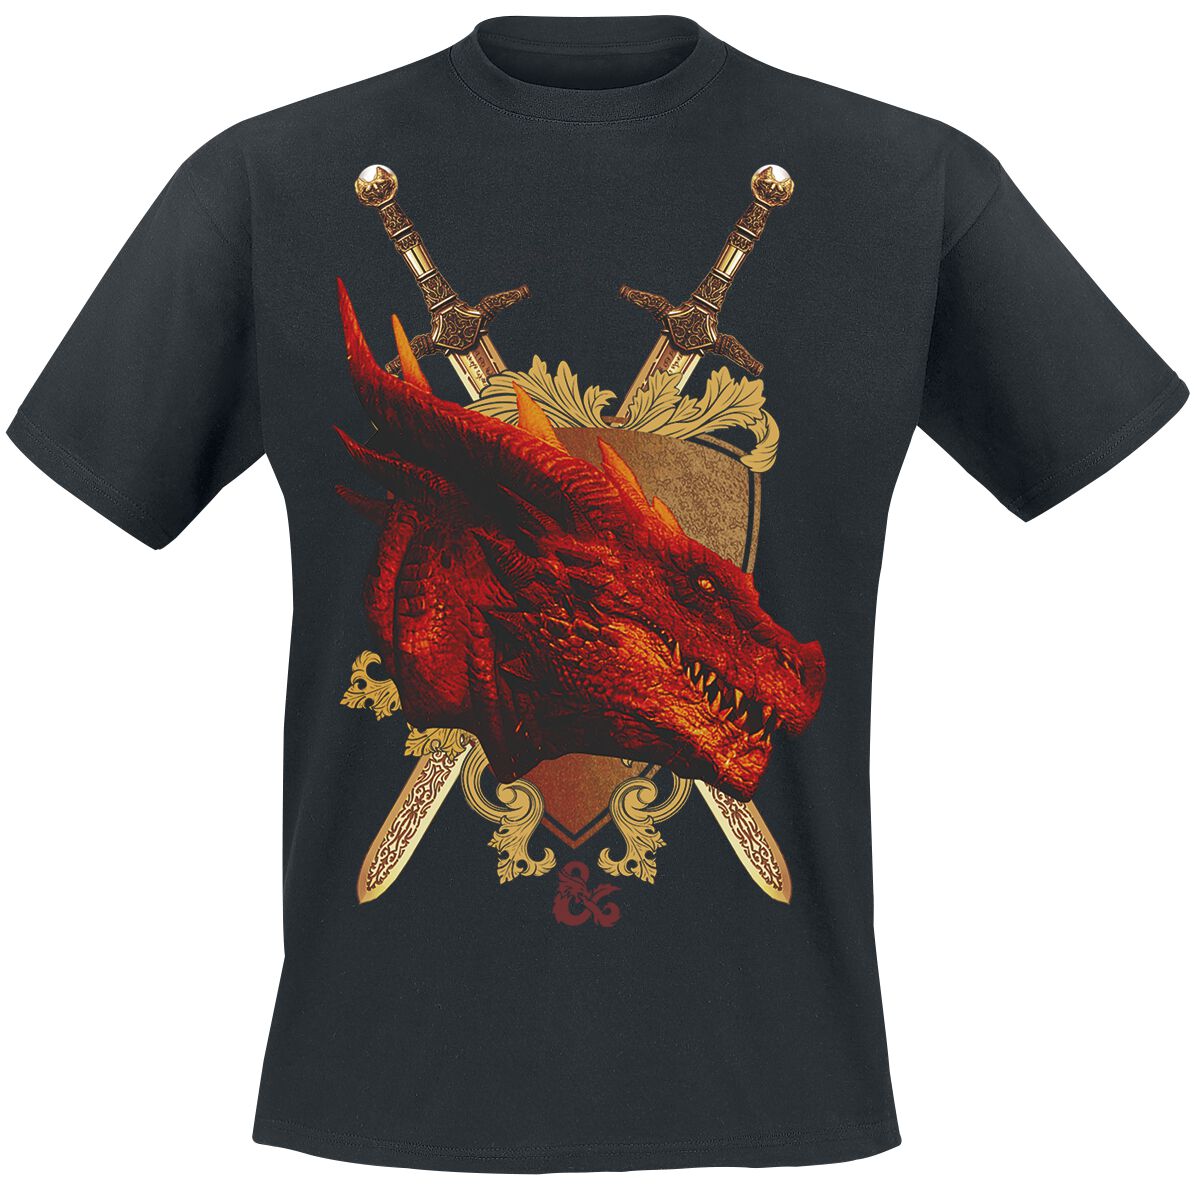 Dungeons and Dragons - Gaming T-Shirt - Honor Among Thieves - Shield - S bis XXL - für Männer - Größe M - schwarz  - EMP exklusives Merchandise!